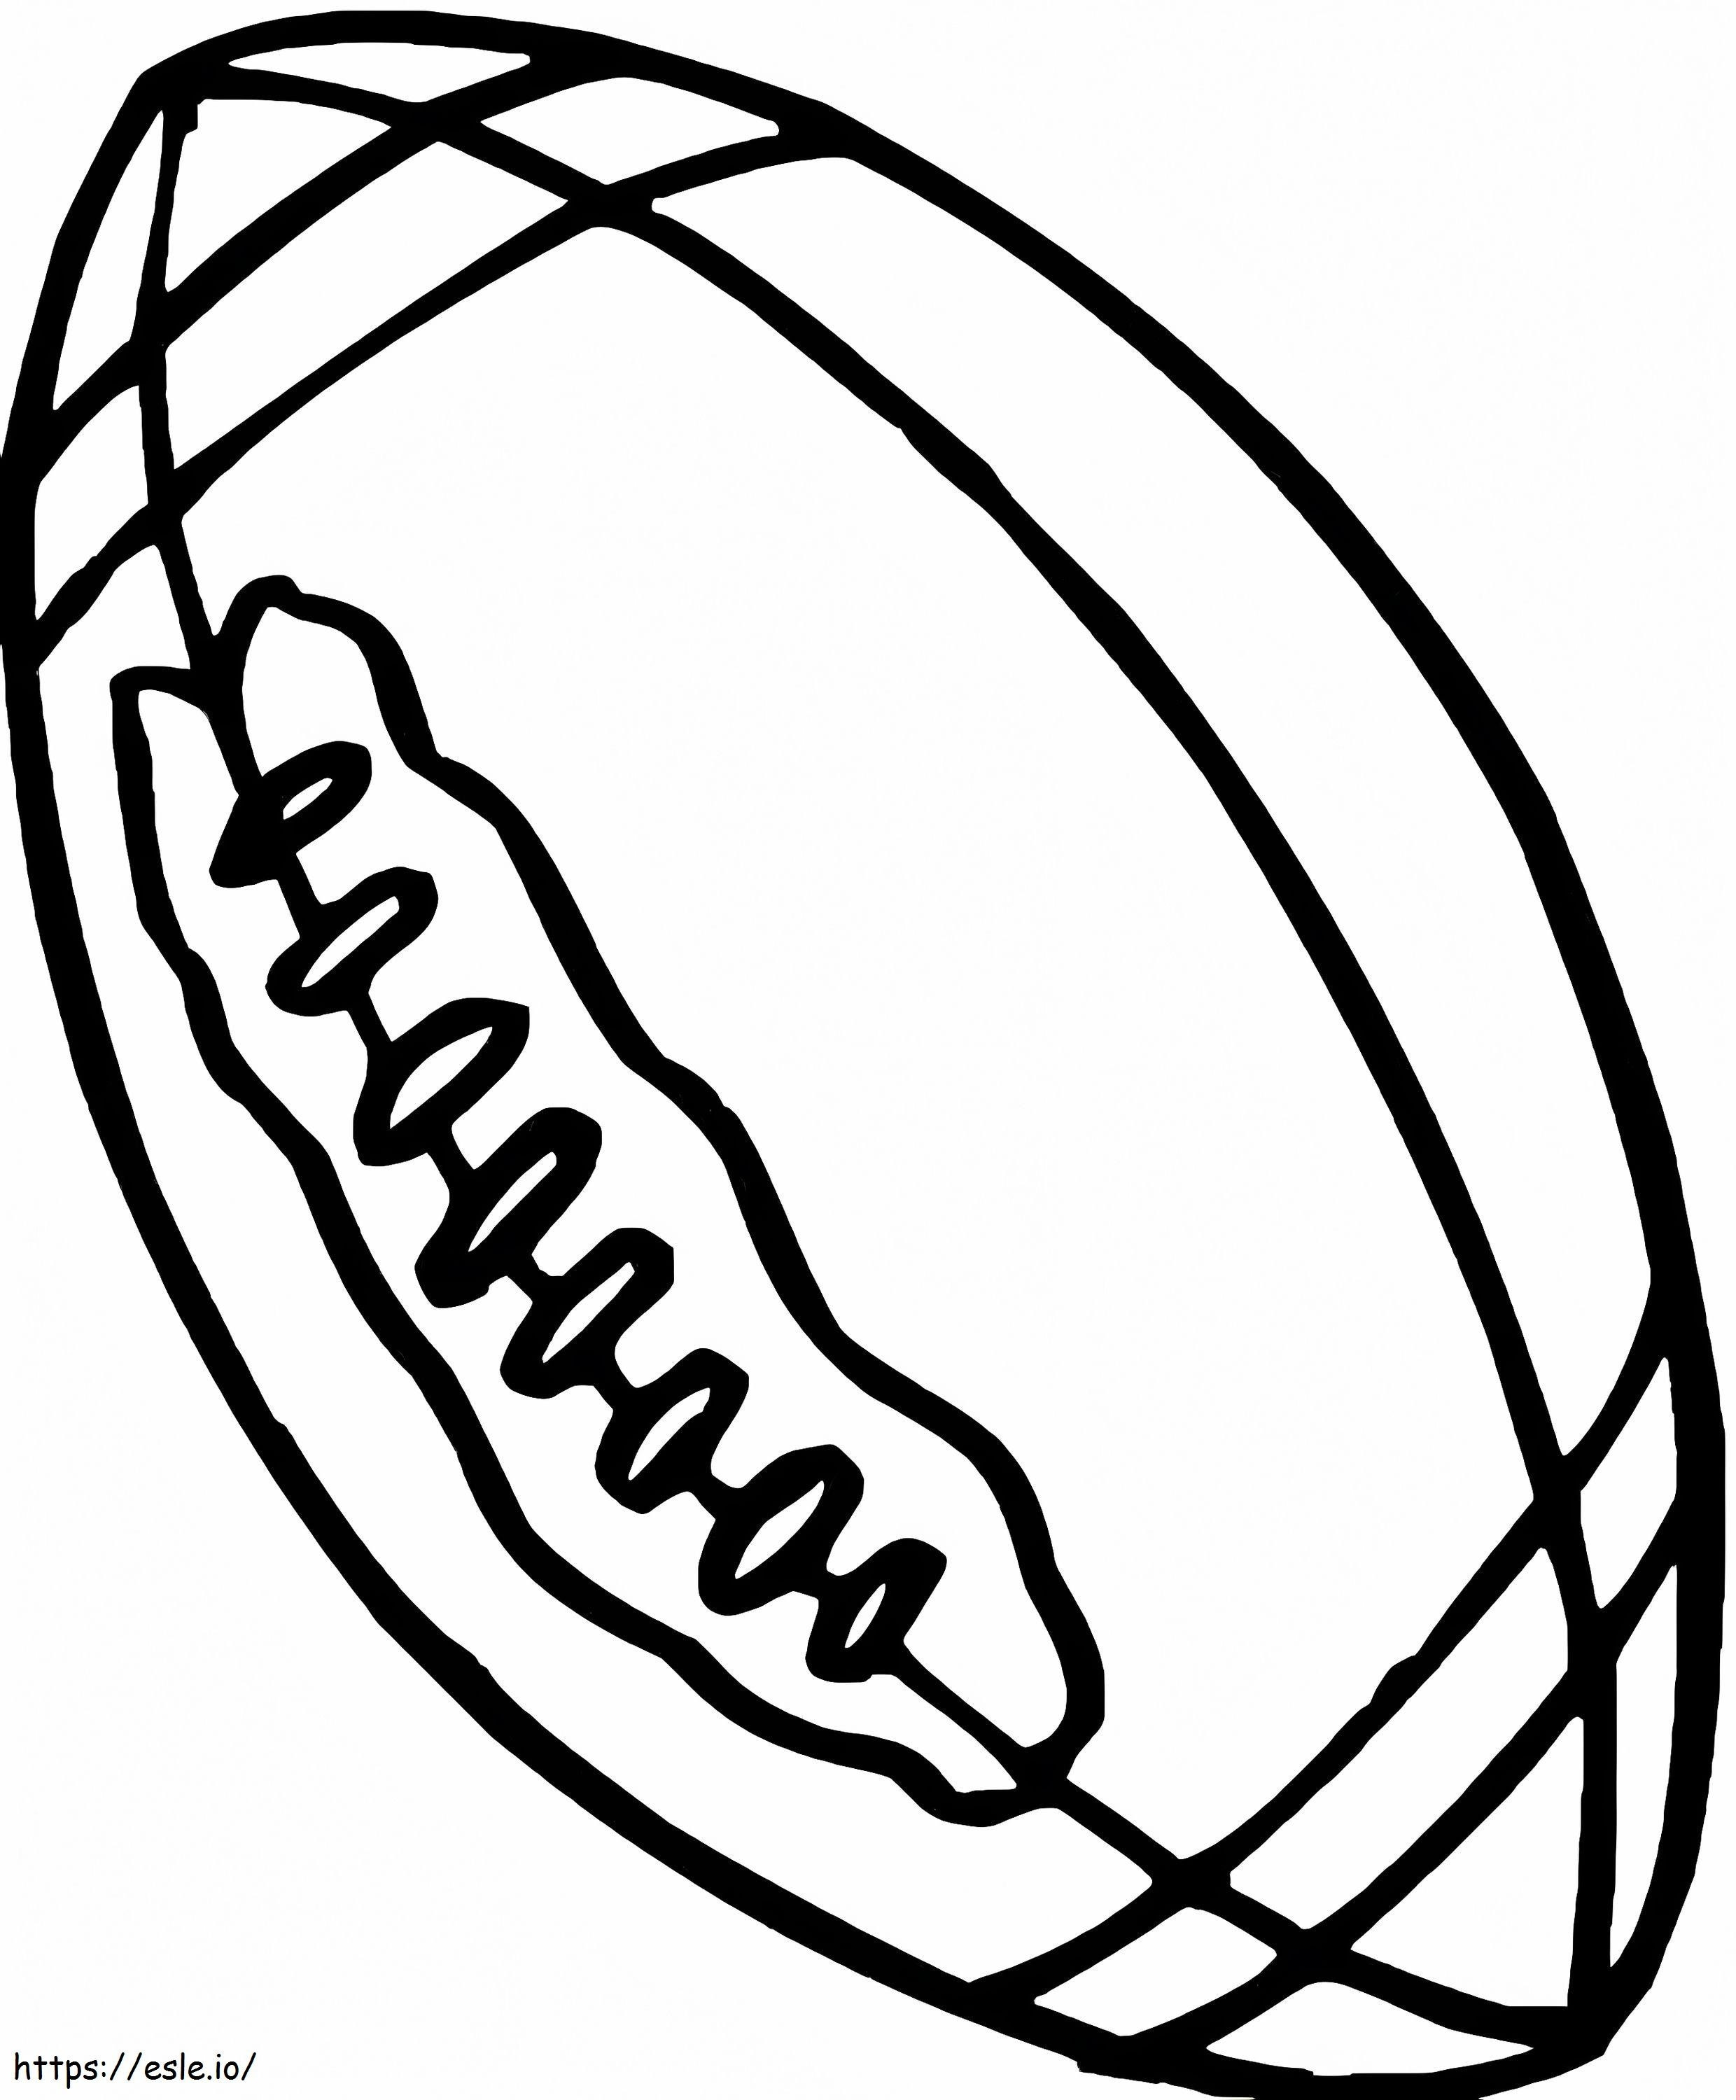 Ücretsiz Rugby Topu boyama